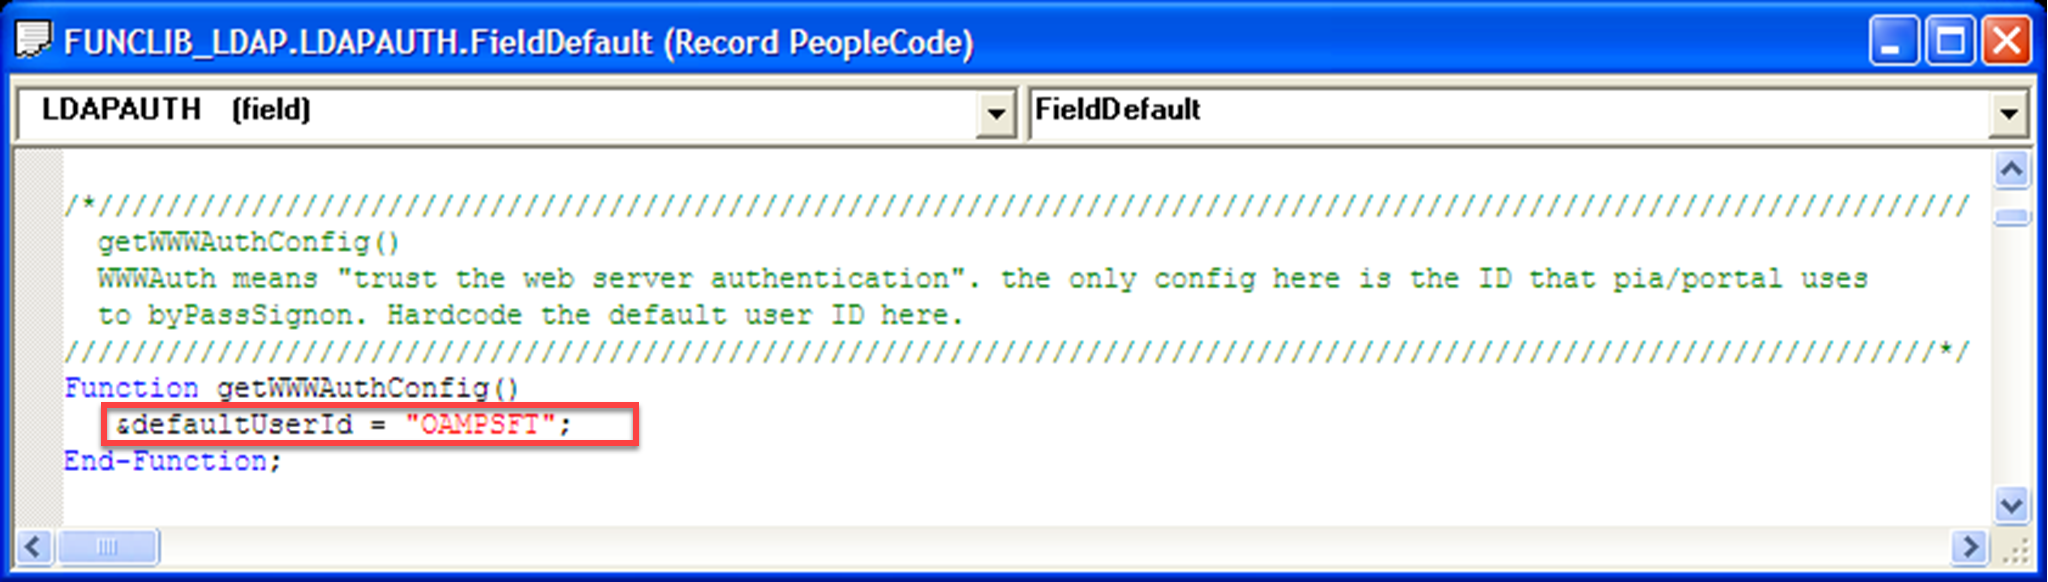 “函数”下默认用户 ID 值等于 OAMPSFT 的屏幕截图。